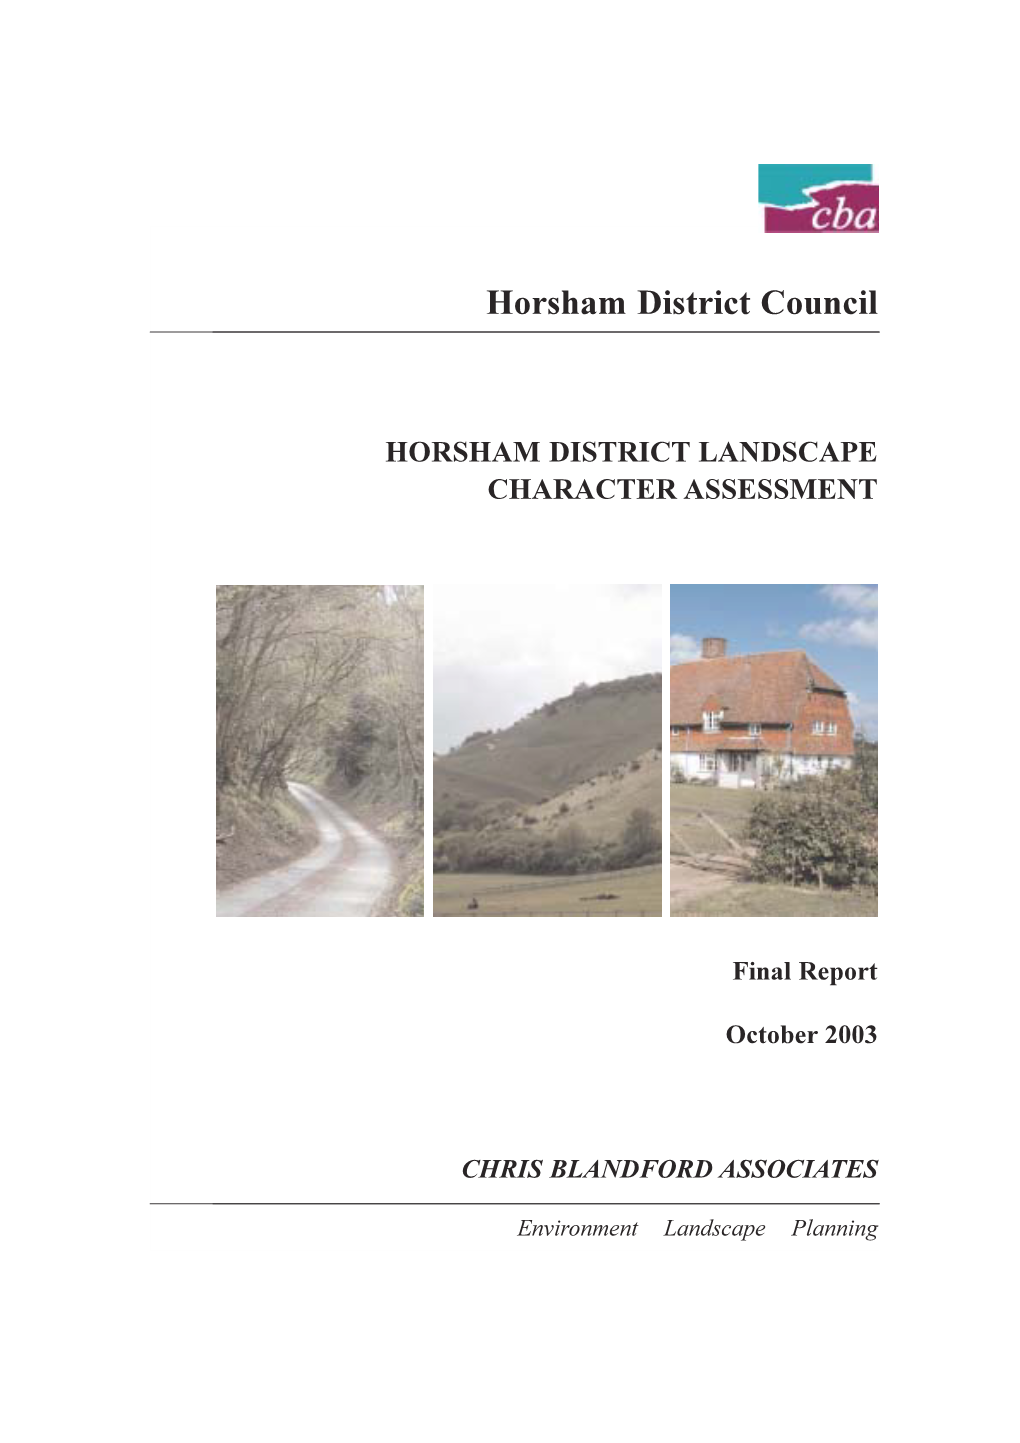 Horsham District Council Landscape